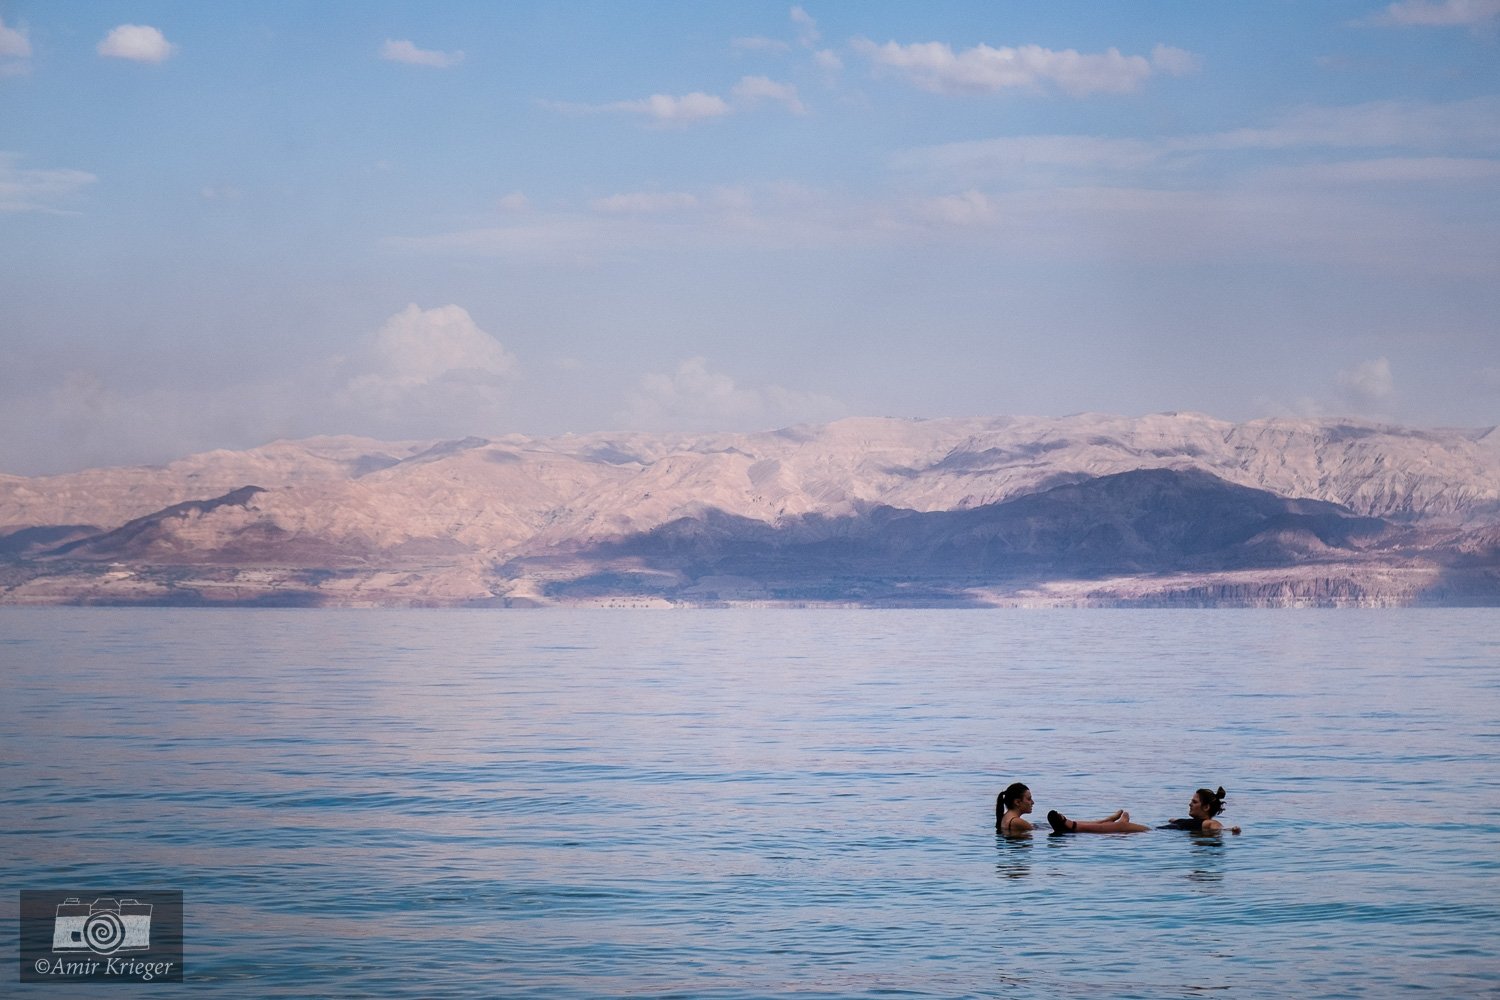  Dead sea, Israel 